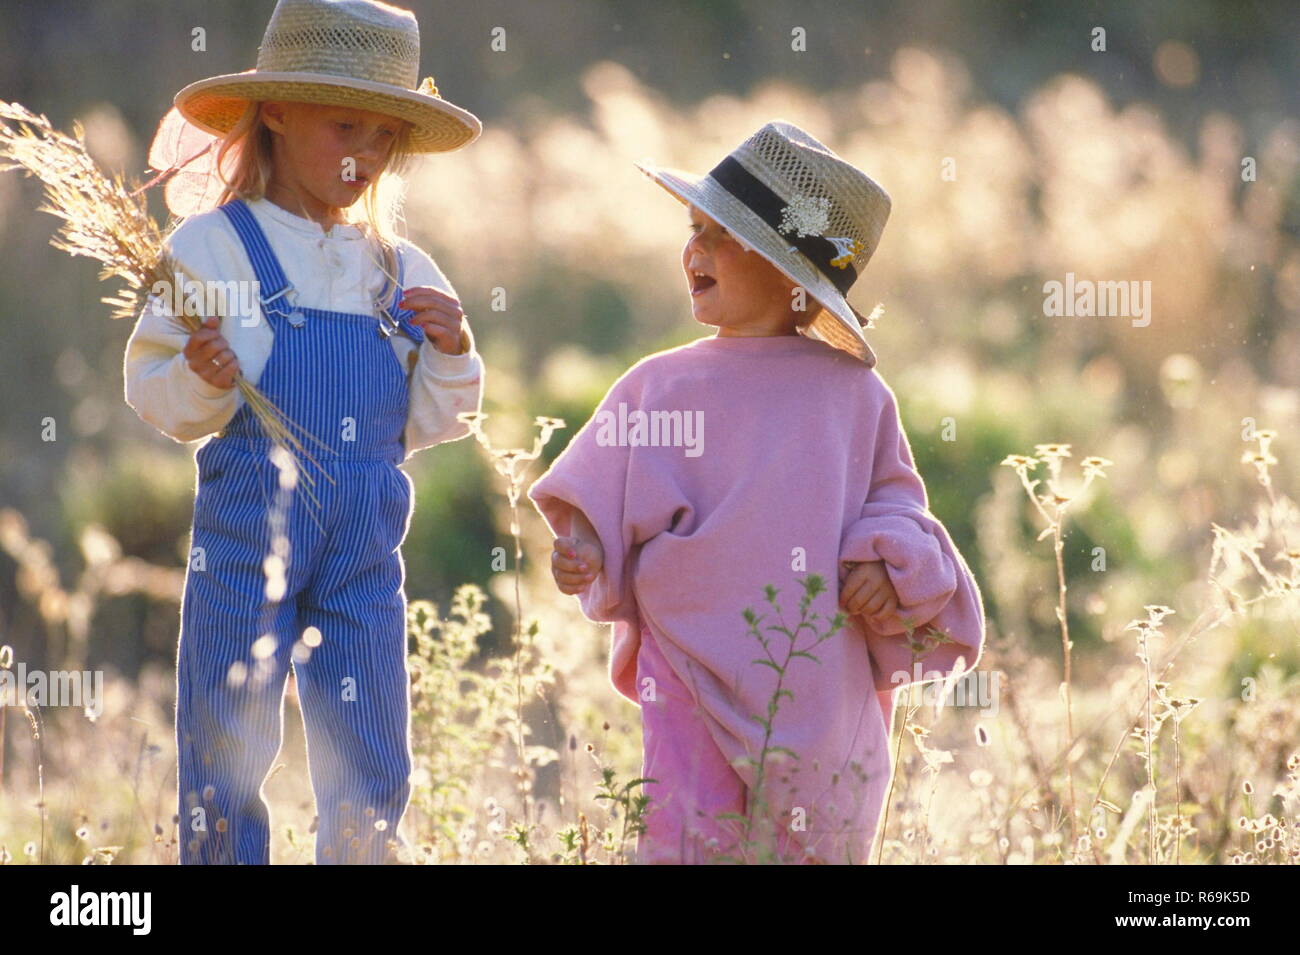 Ritratto, 2 Schwestern mit Strohhueten, 4 und 6 Jahre, stehen im Spaetsommer in einer Wildwiese und pfluecken einen Strauss trockener Graeser Foto Stock